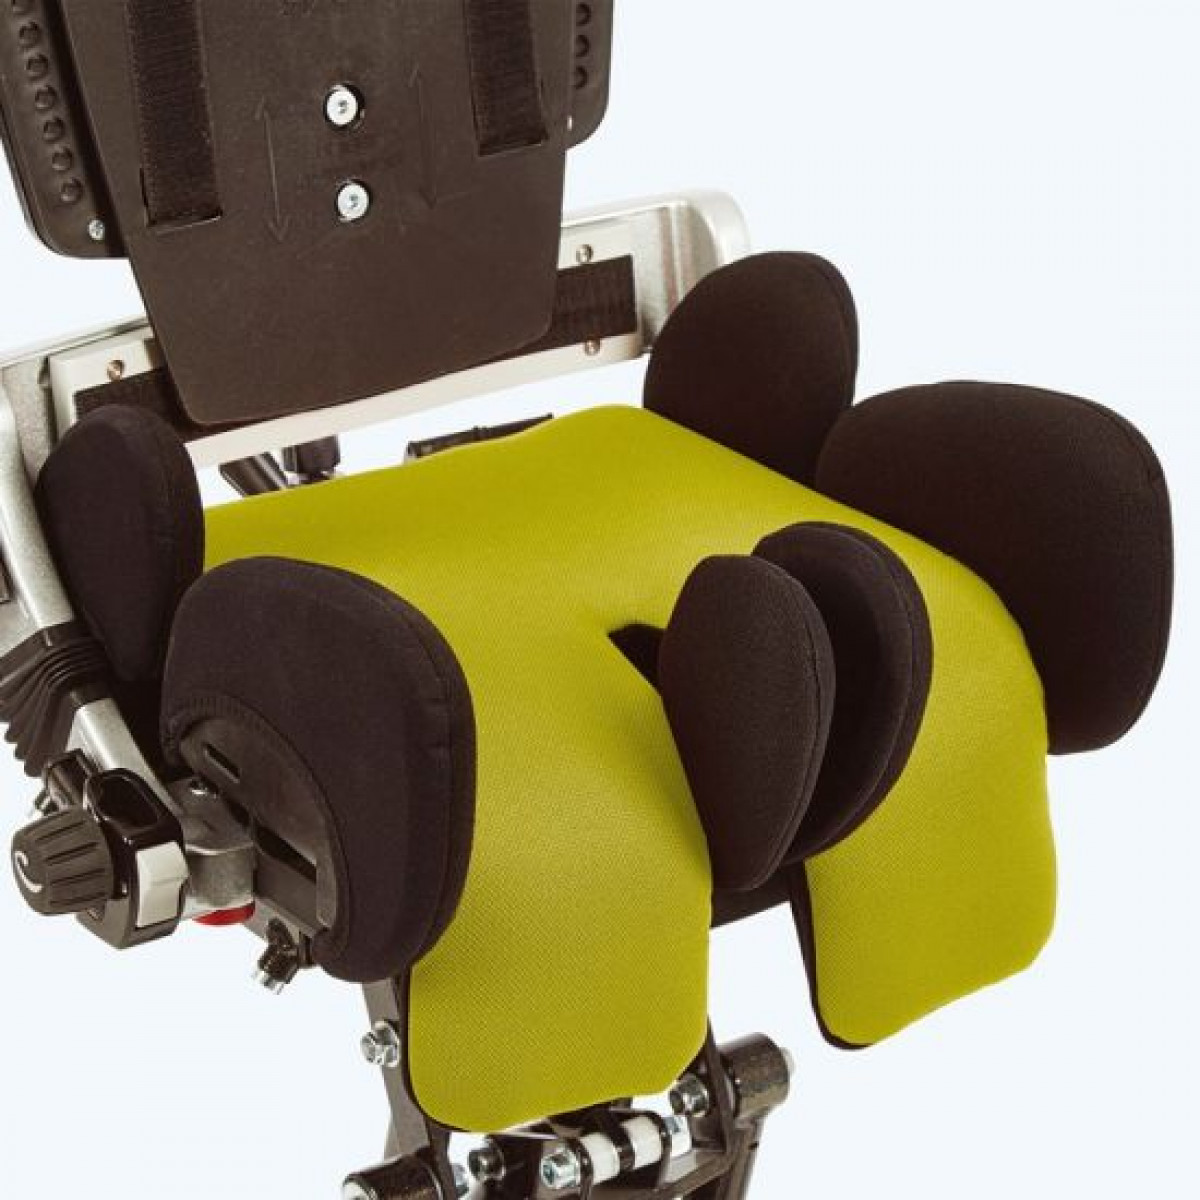 Кресло коляска икс панда